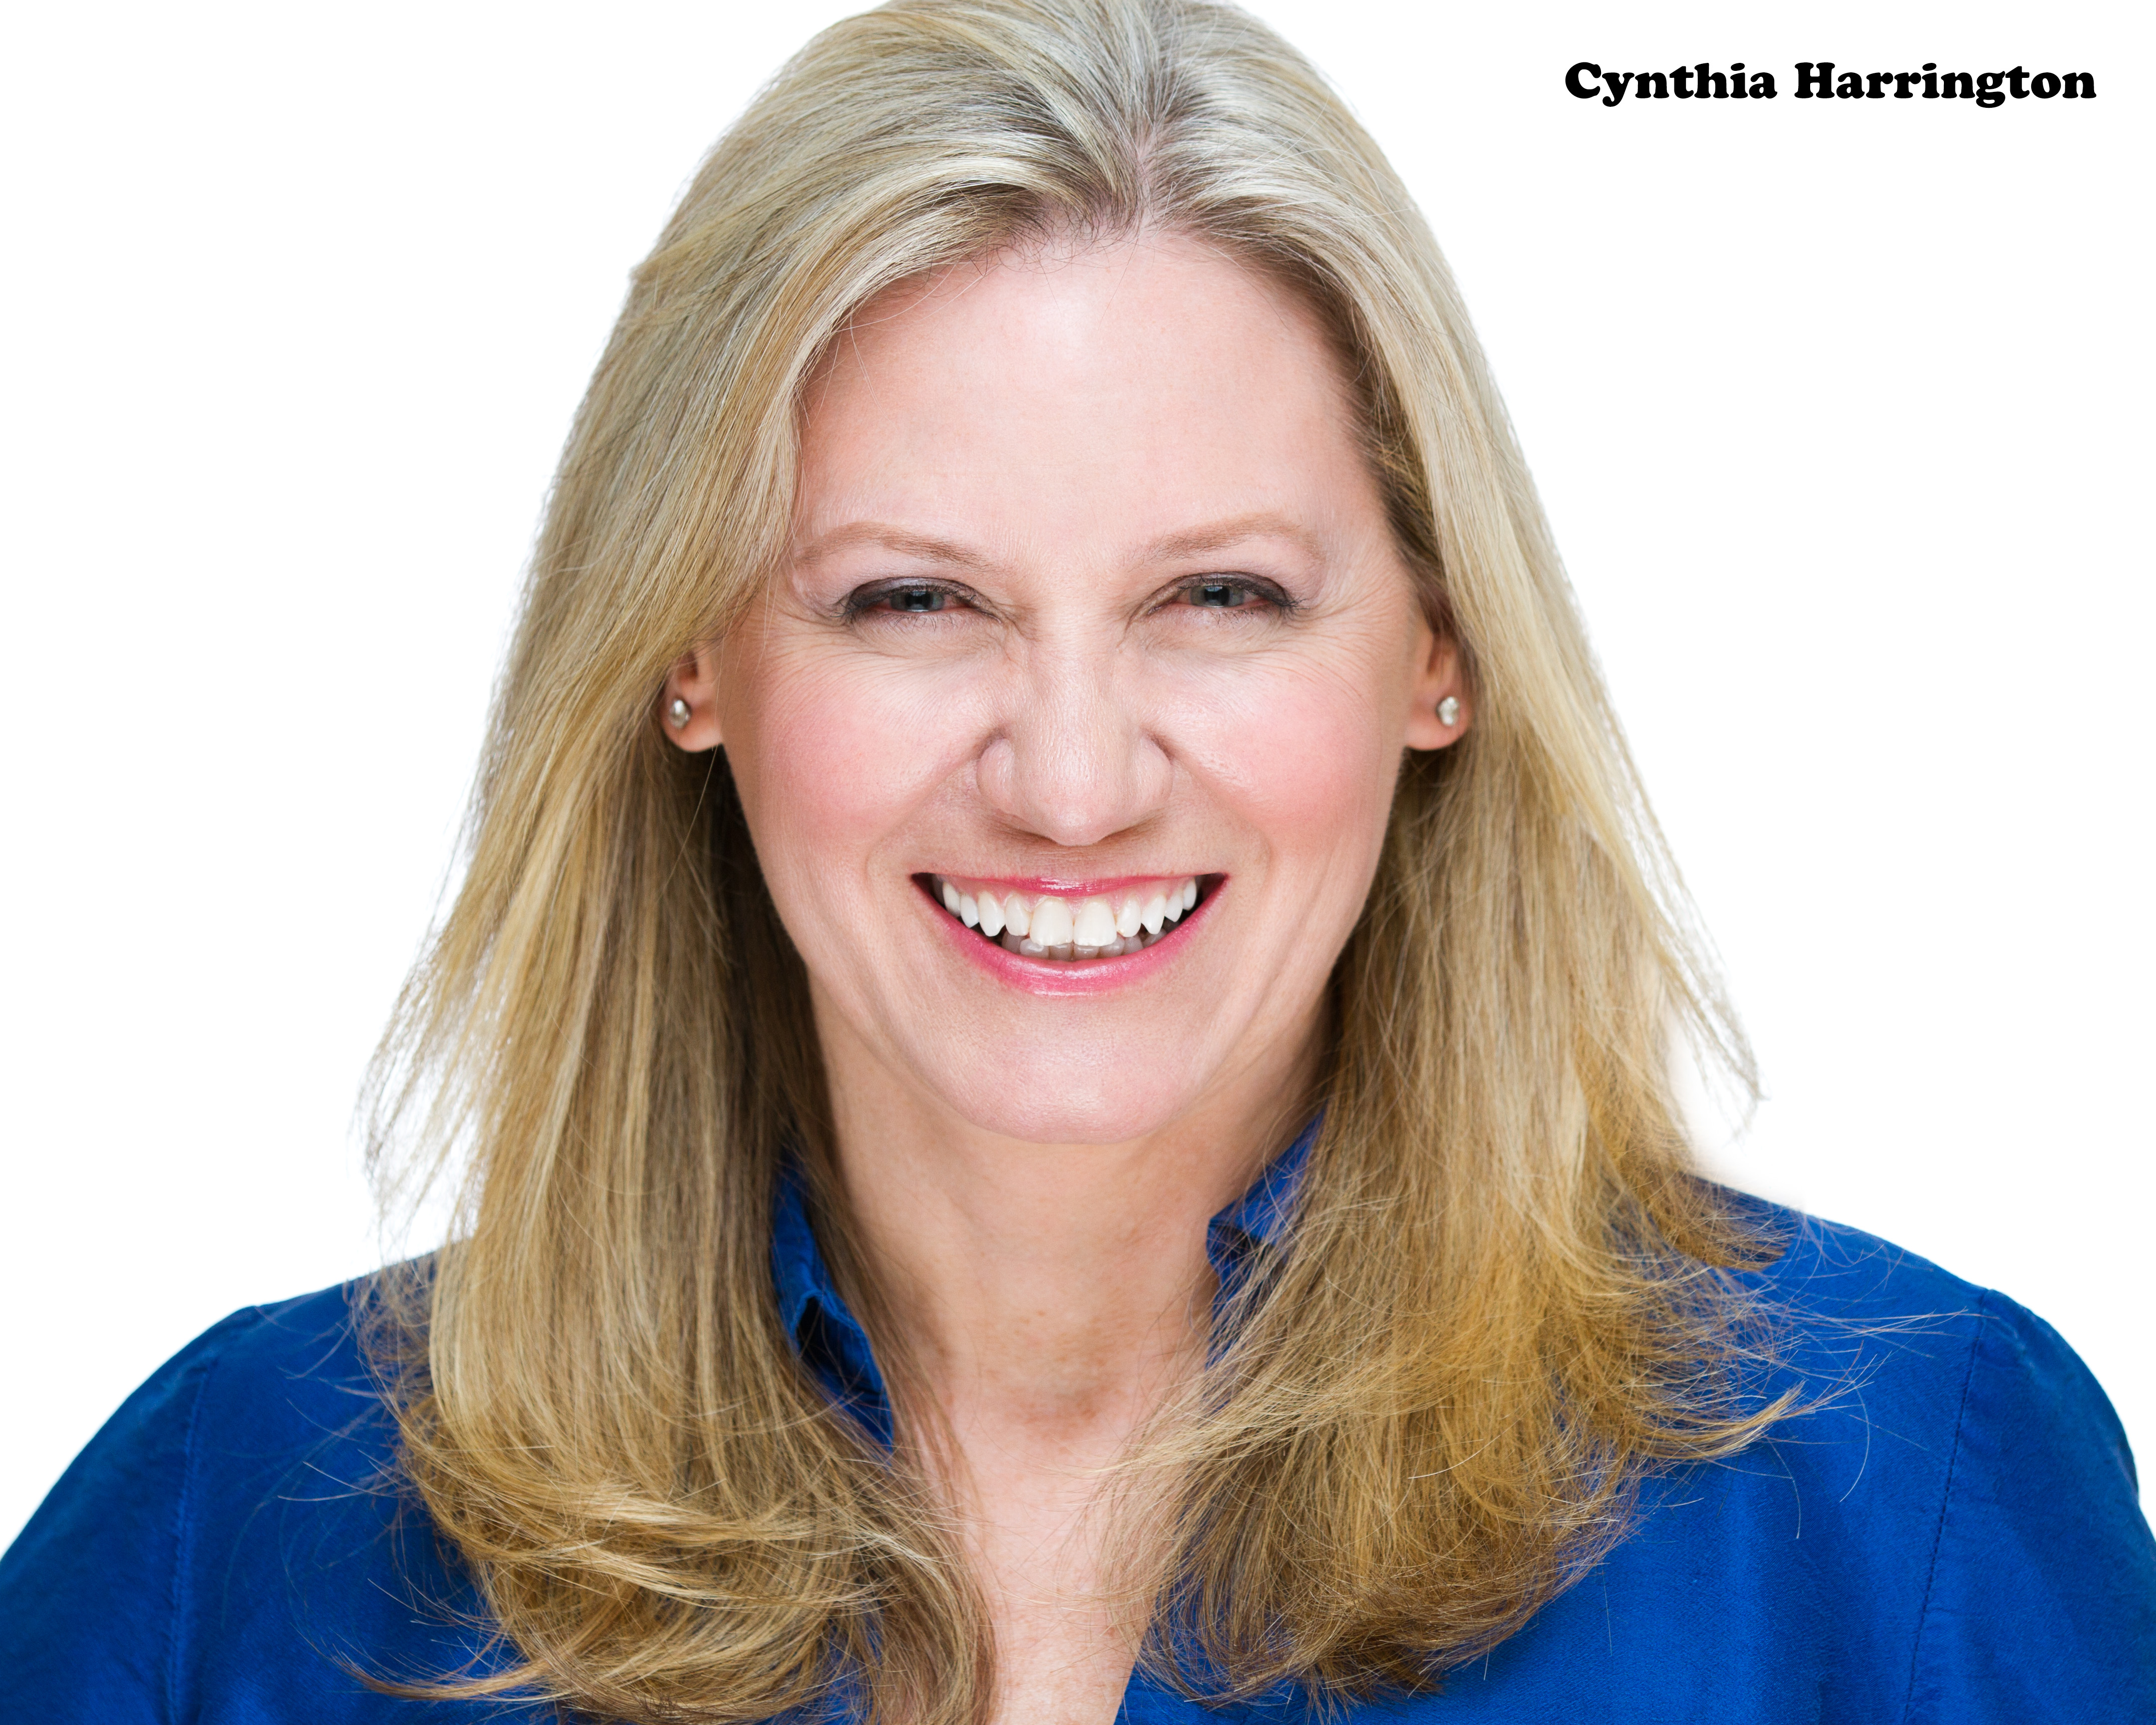 Cynthia Harrington